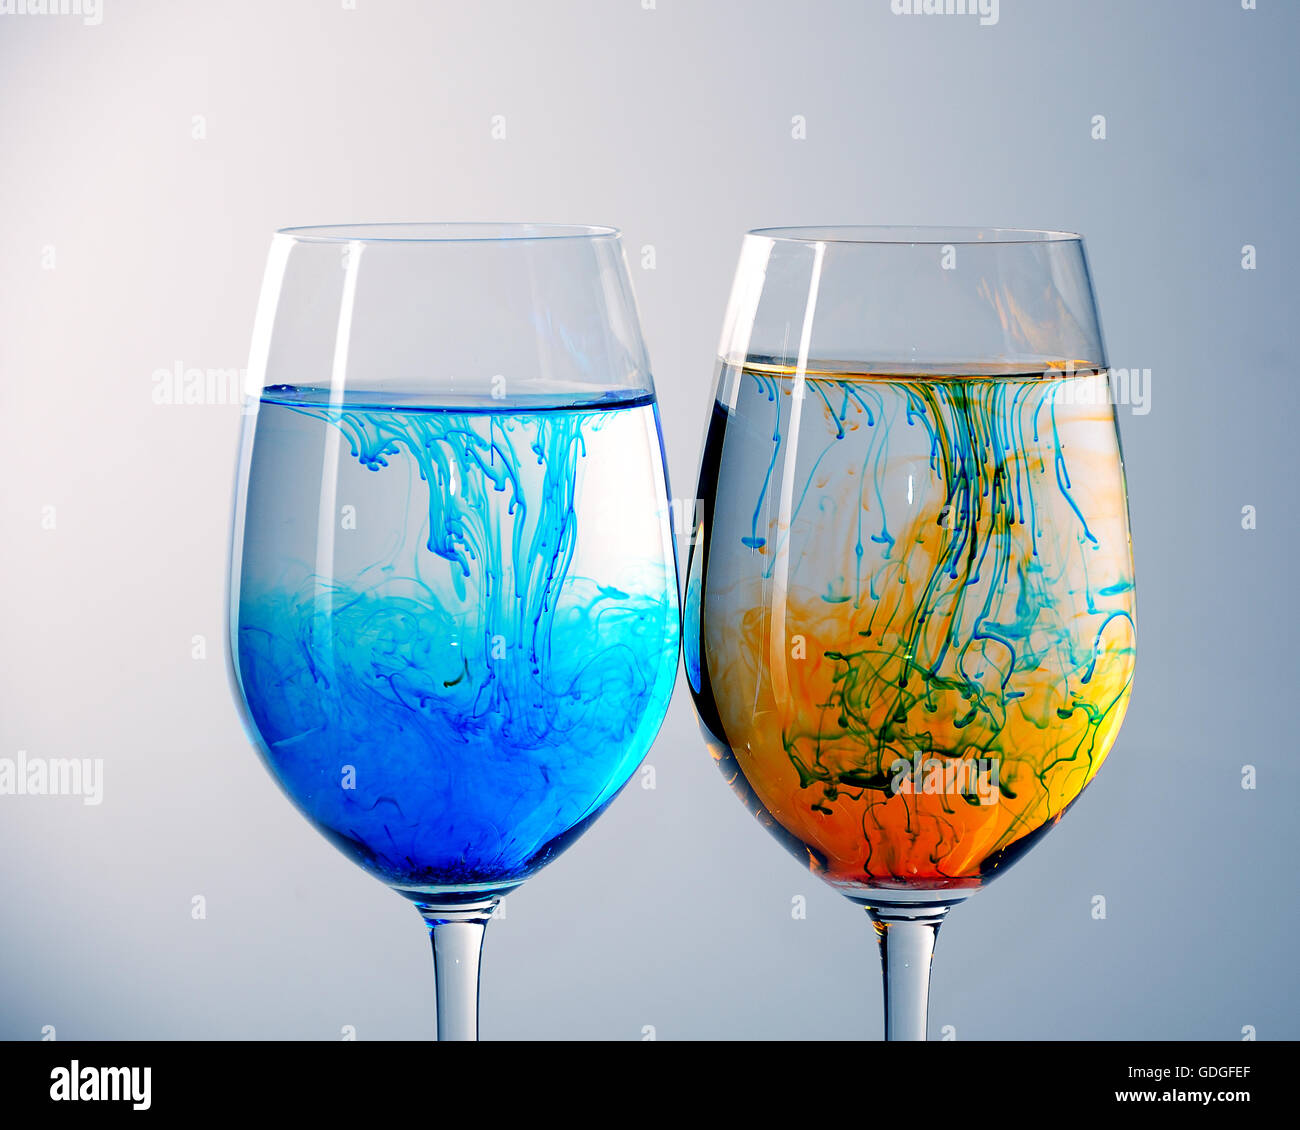 Deux verres à vin remplie d'eau et de propagation rouge, jaune et bleu de l'encre Banque D'Images